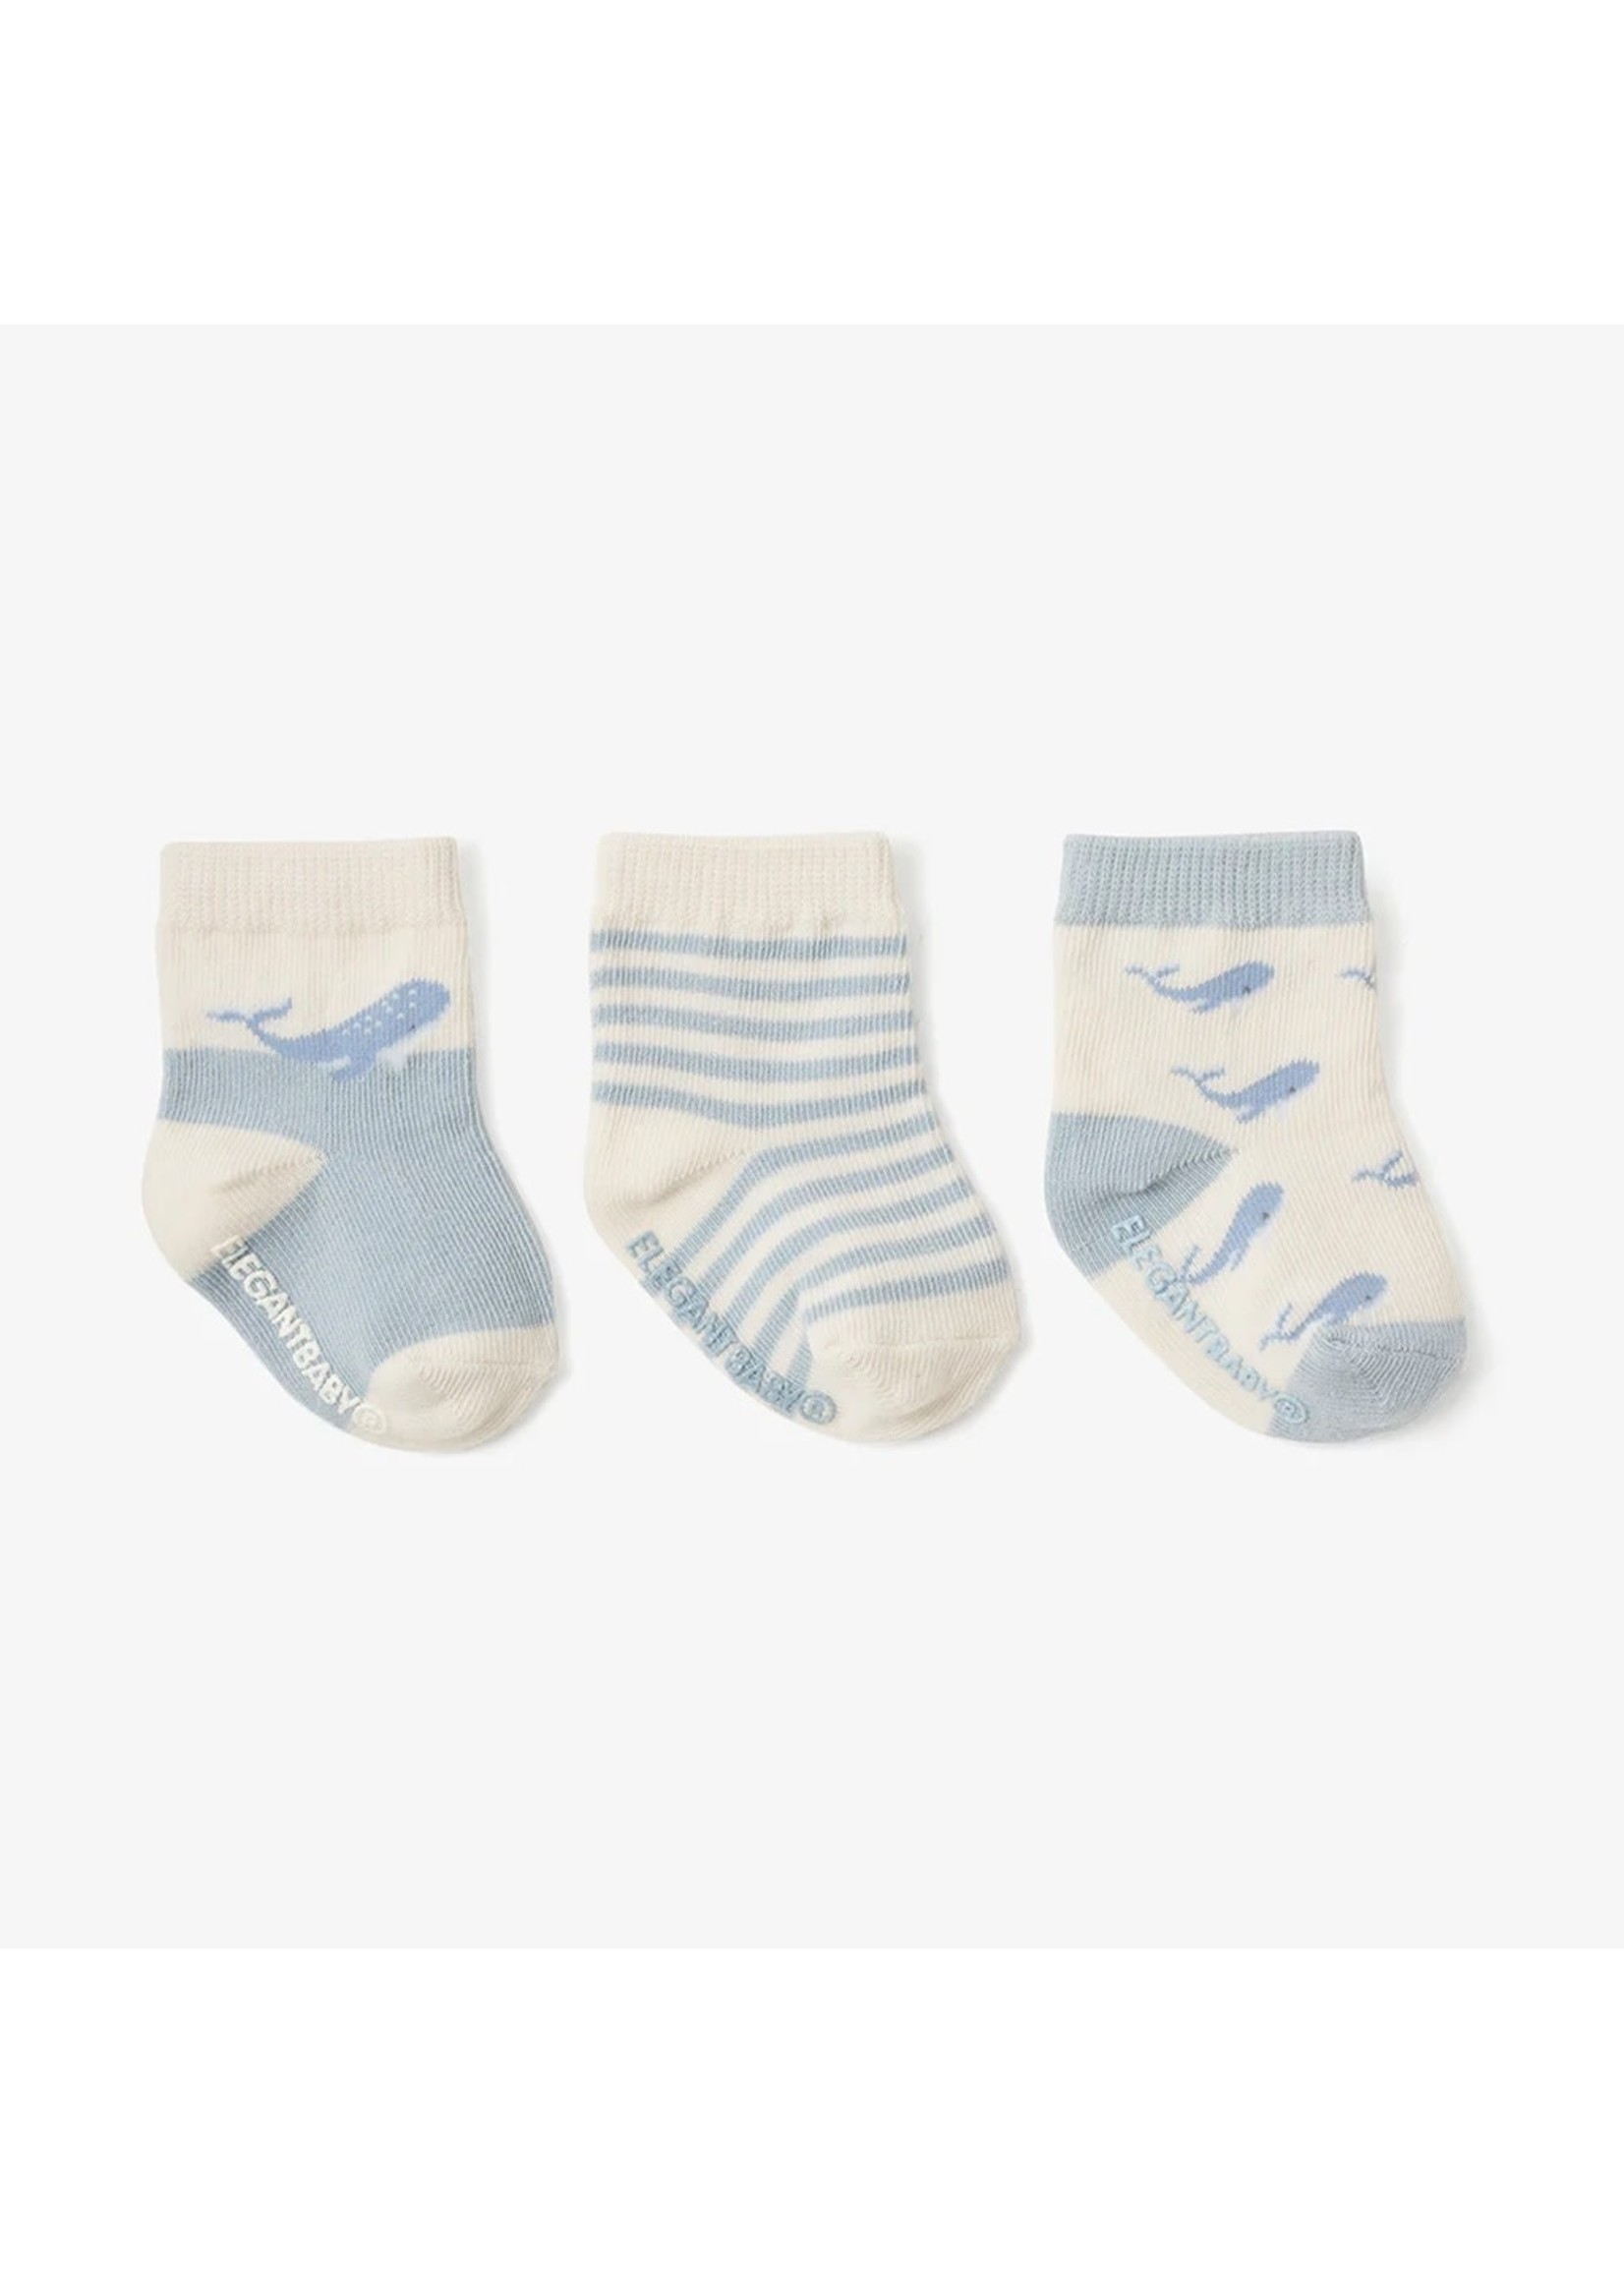 Socks - Ocean Adventure (3 pack)